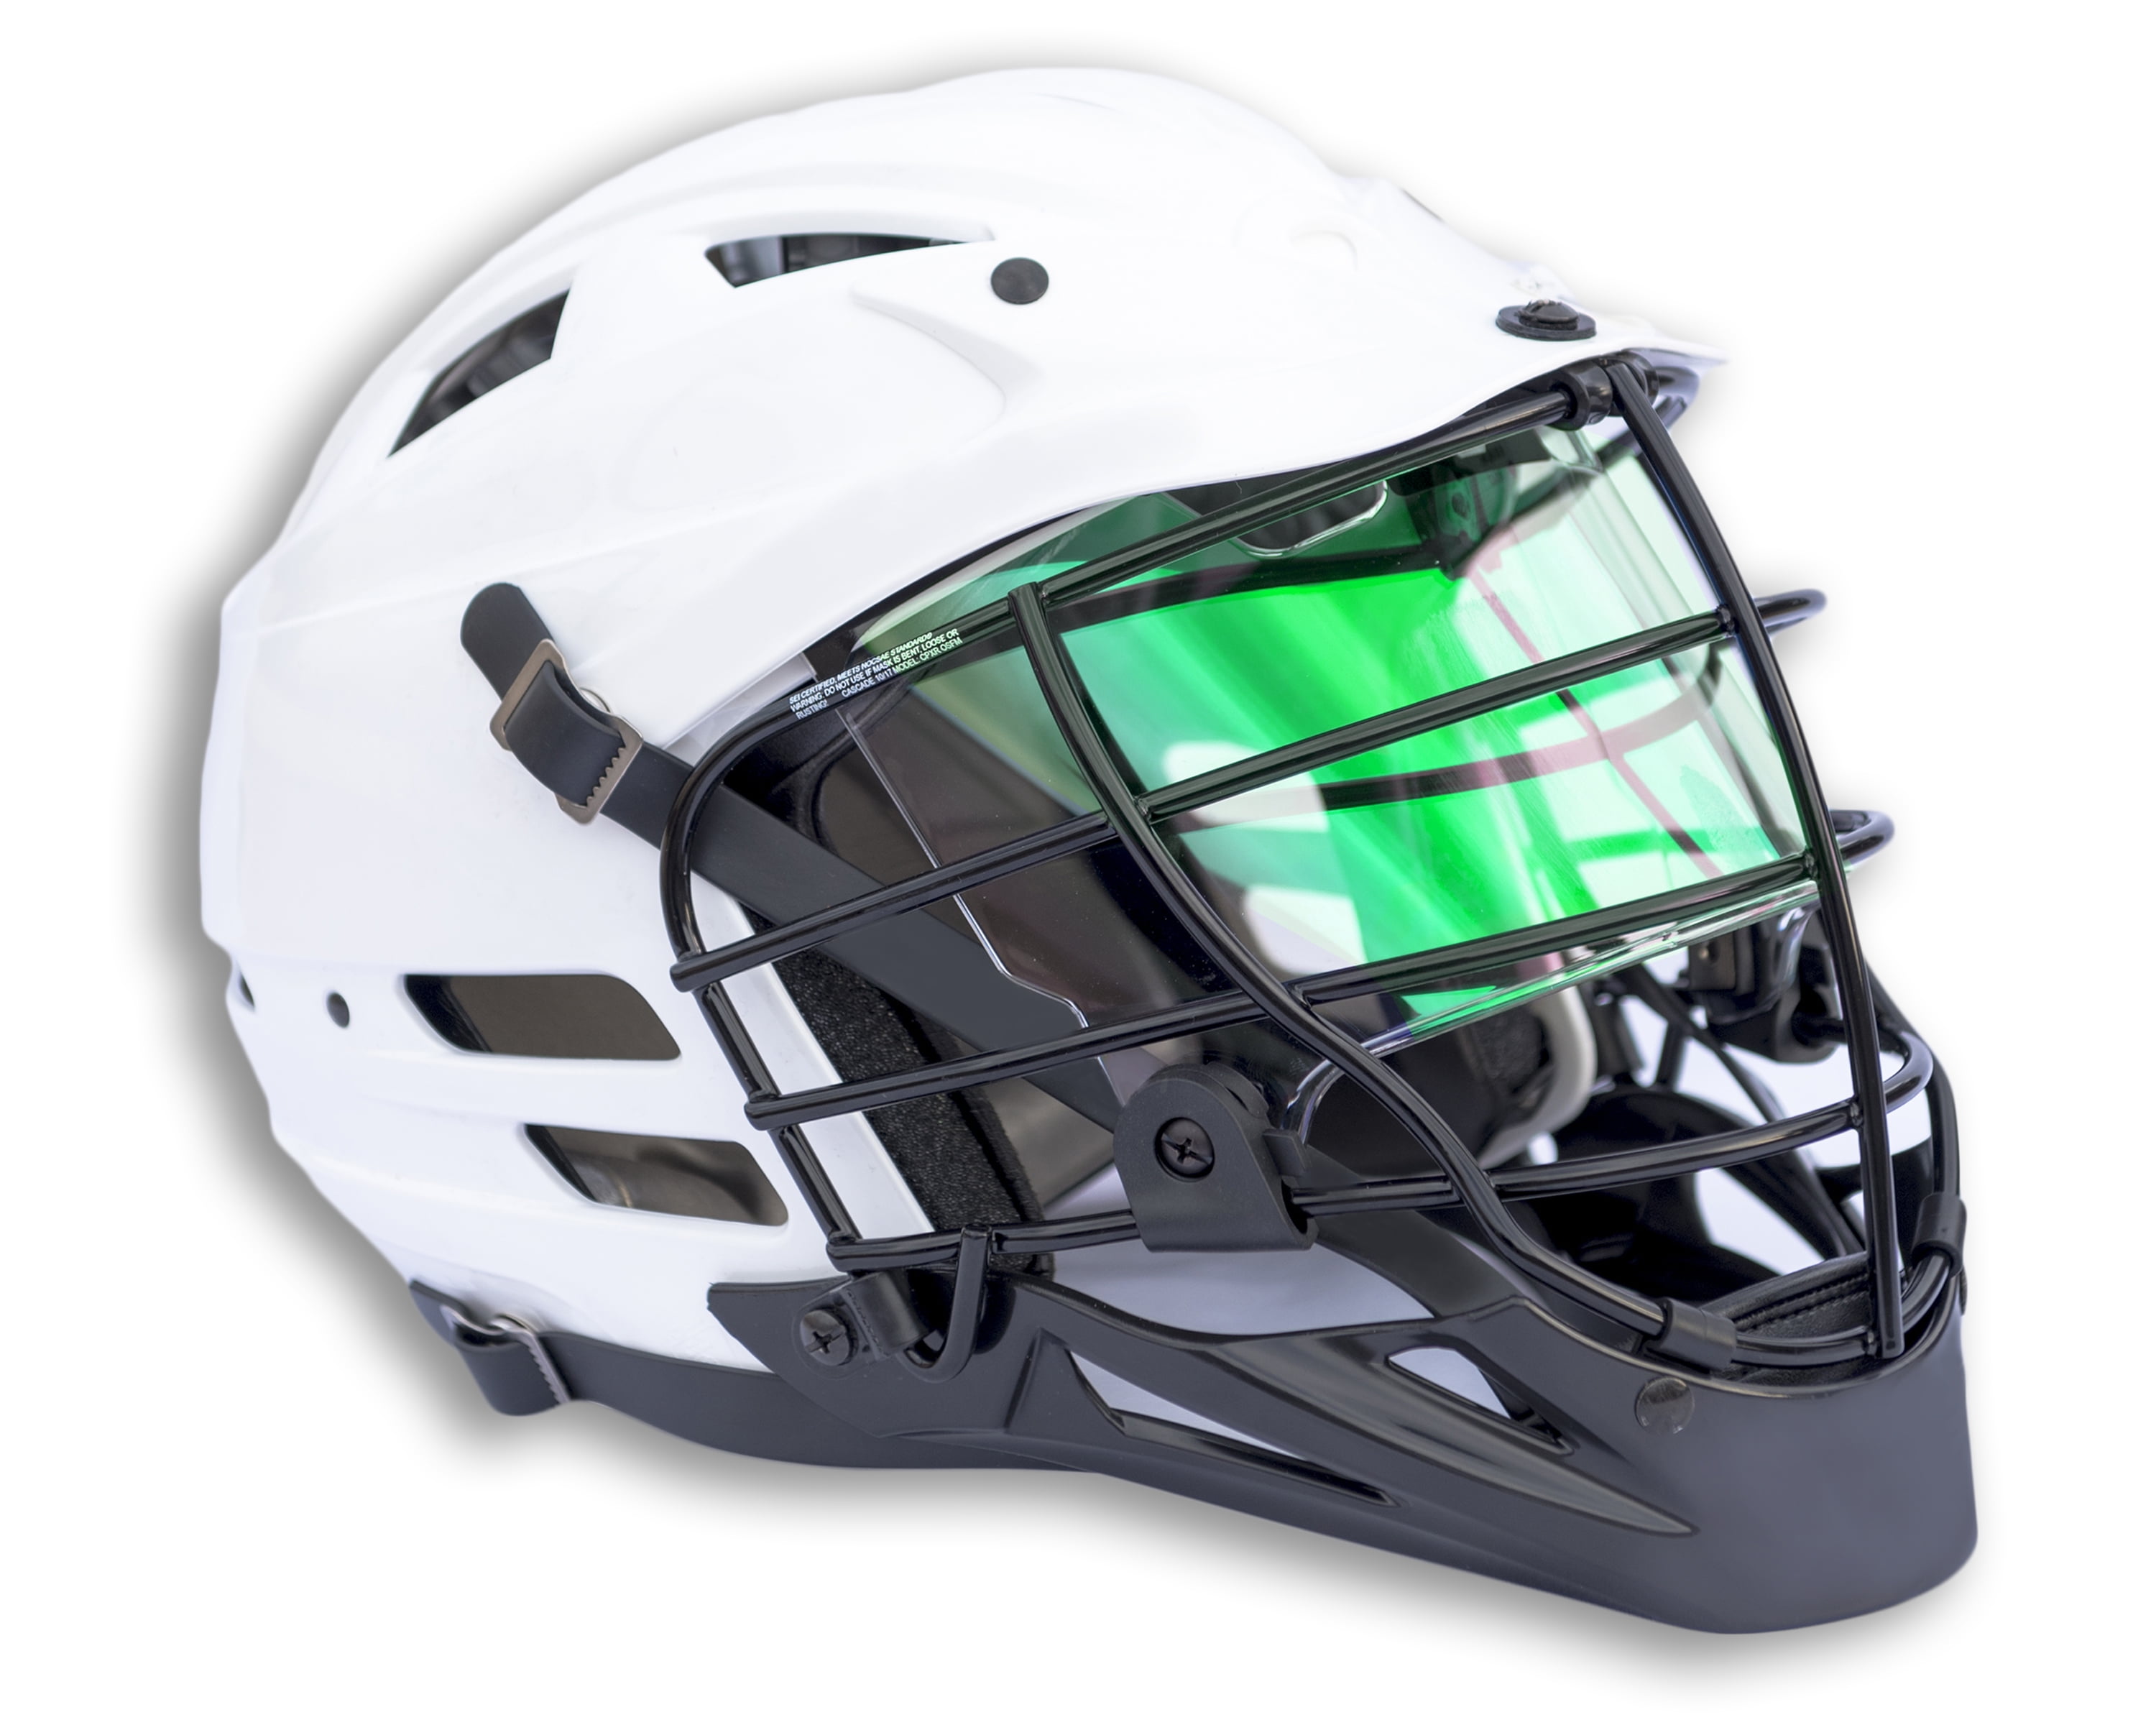 Adult Helmets Fits Kids EliteTek Color Football Visor for Helmet Tinted Eye Protection Prevent Eye Pokes Youth